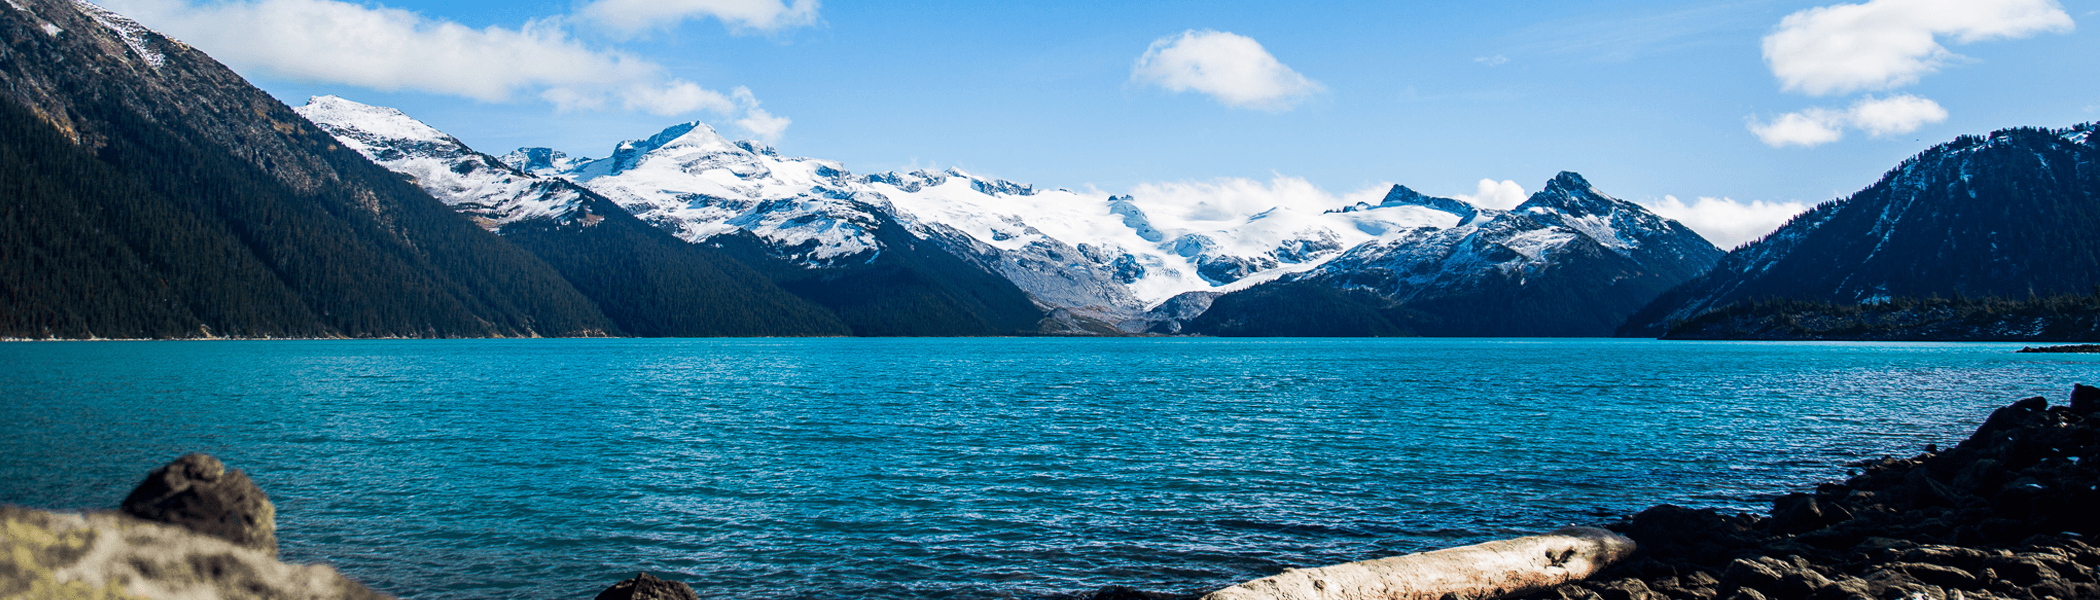 Le lac Garibaldi dans toutes ses couleurs. Probablement l'un des plus beaux lacs du Canada.